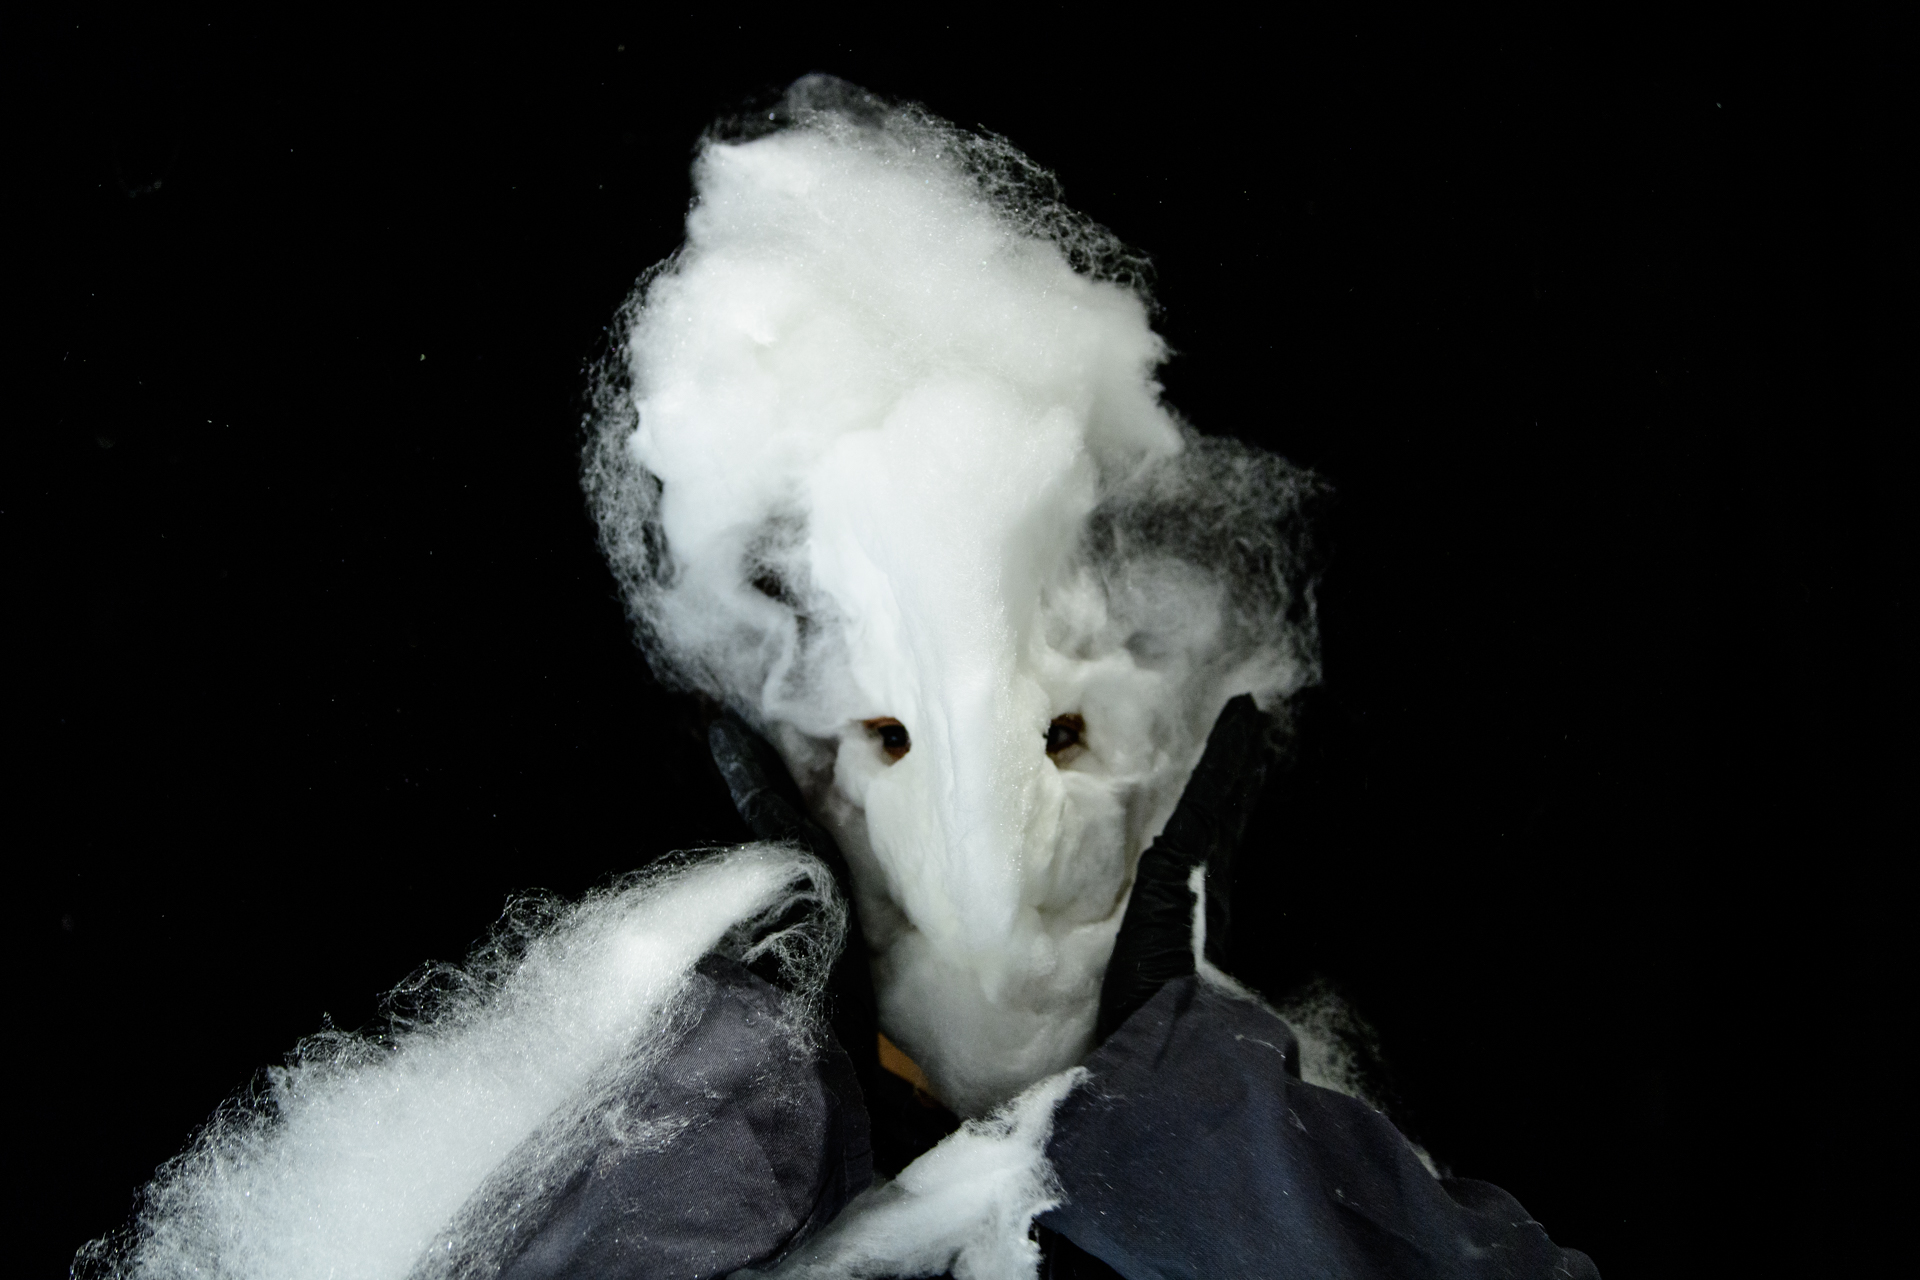 Performerin mit angedeuteter Maske aus Zuckerwatte vor dunklem Bühnenhintergrund.